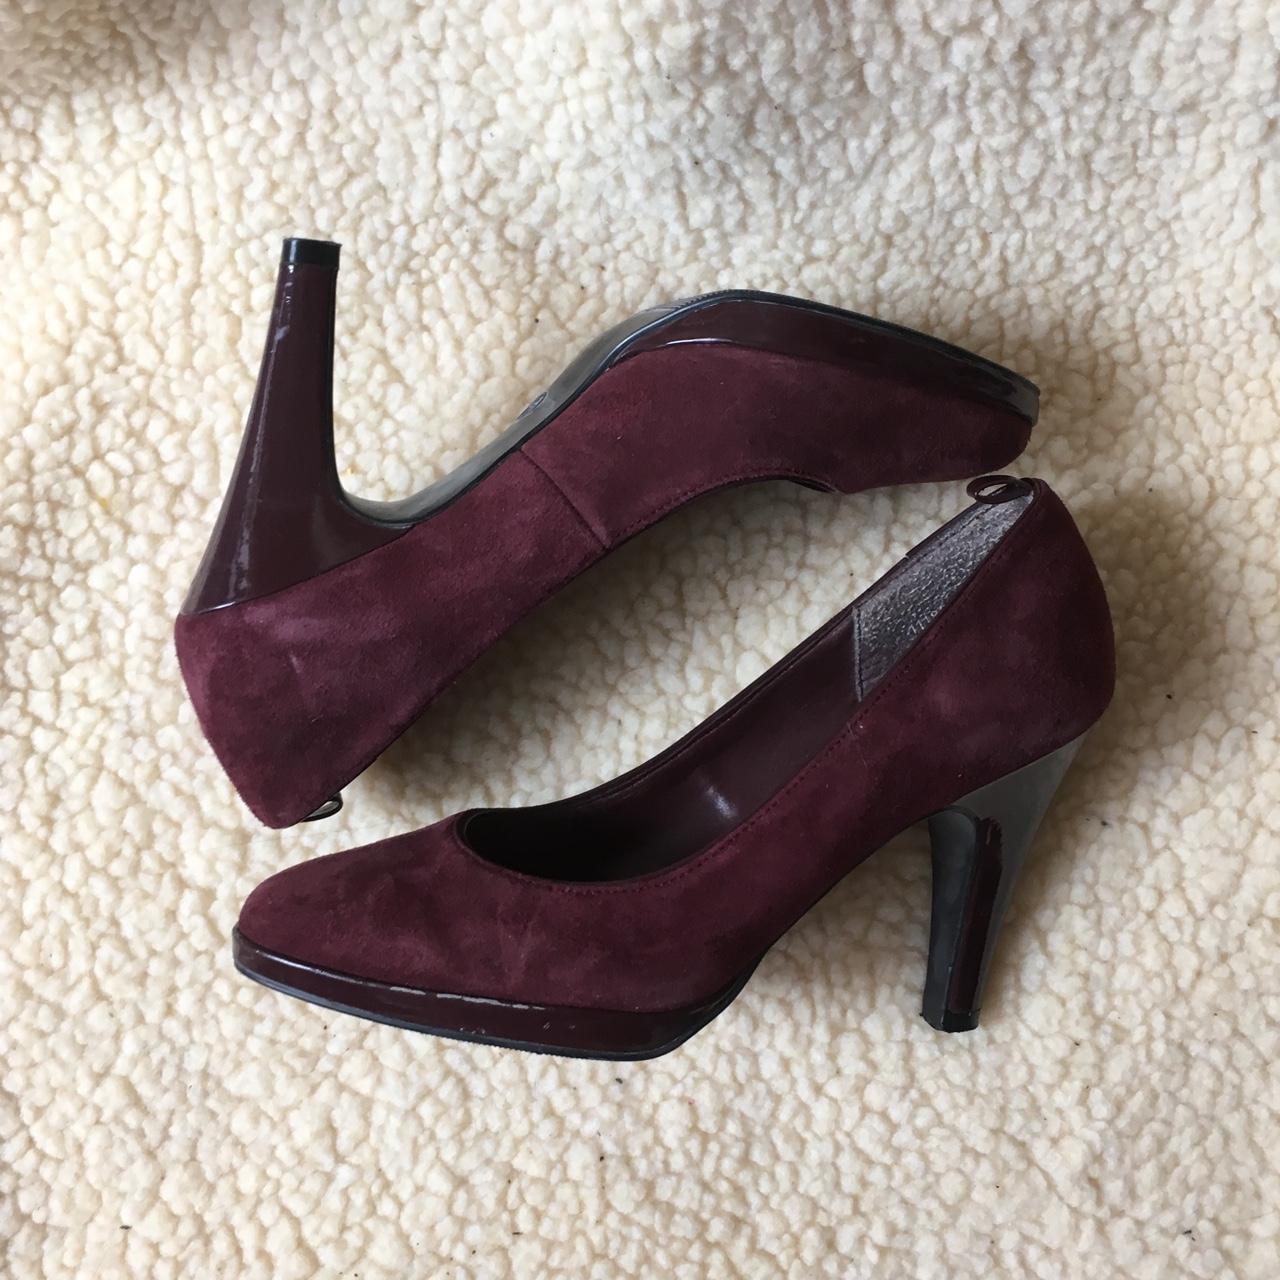 New look high heels. Worn once or twice in good... - Depop